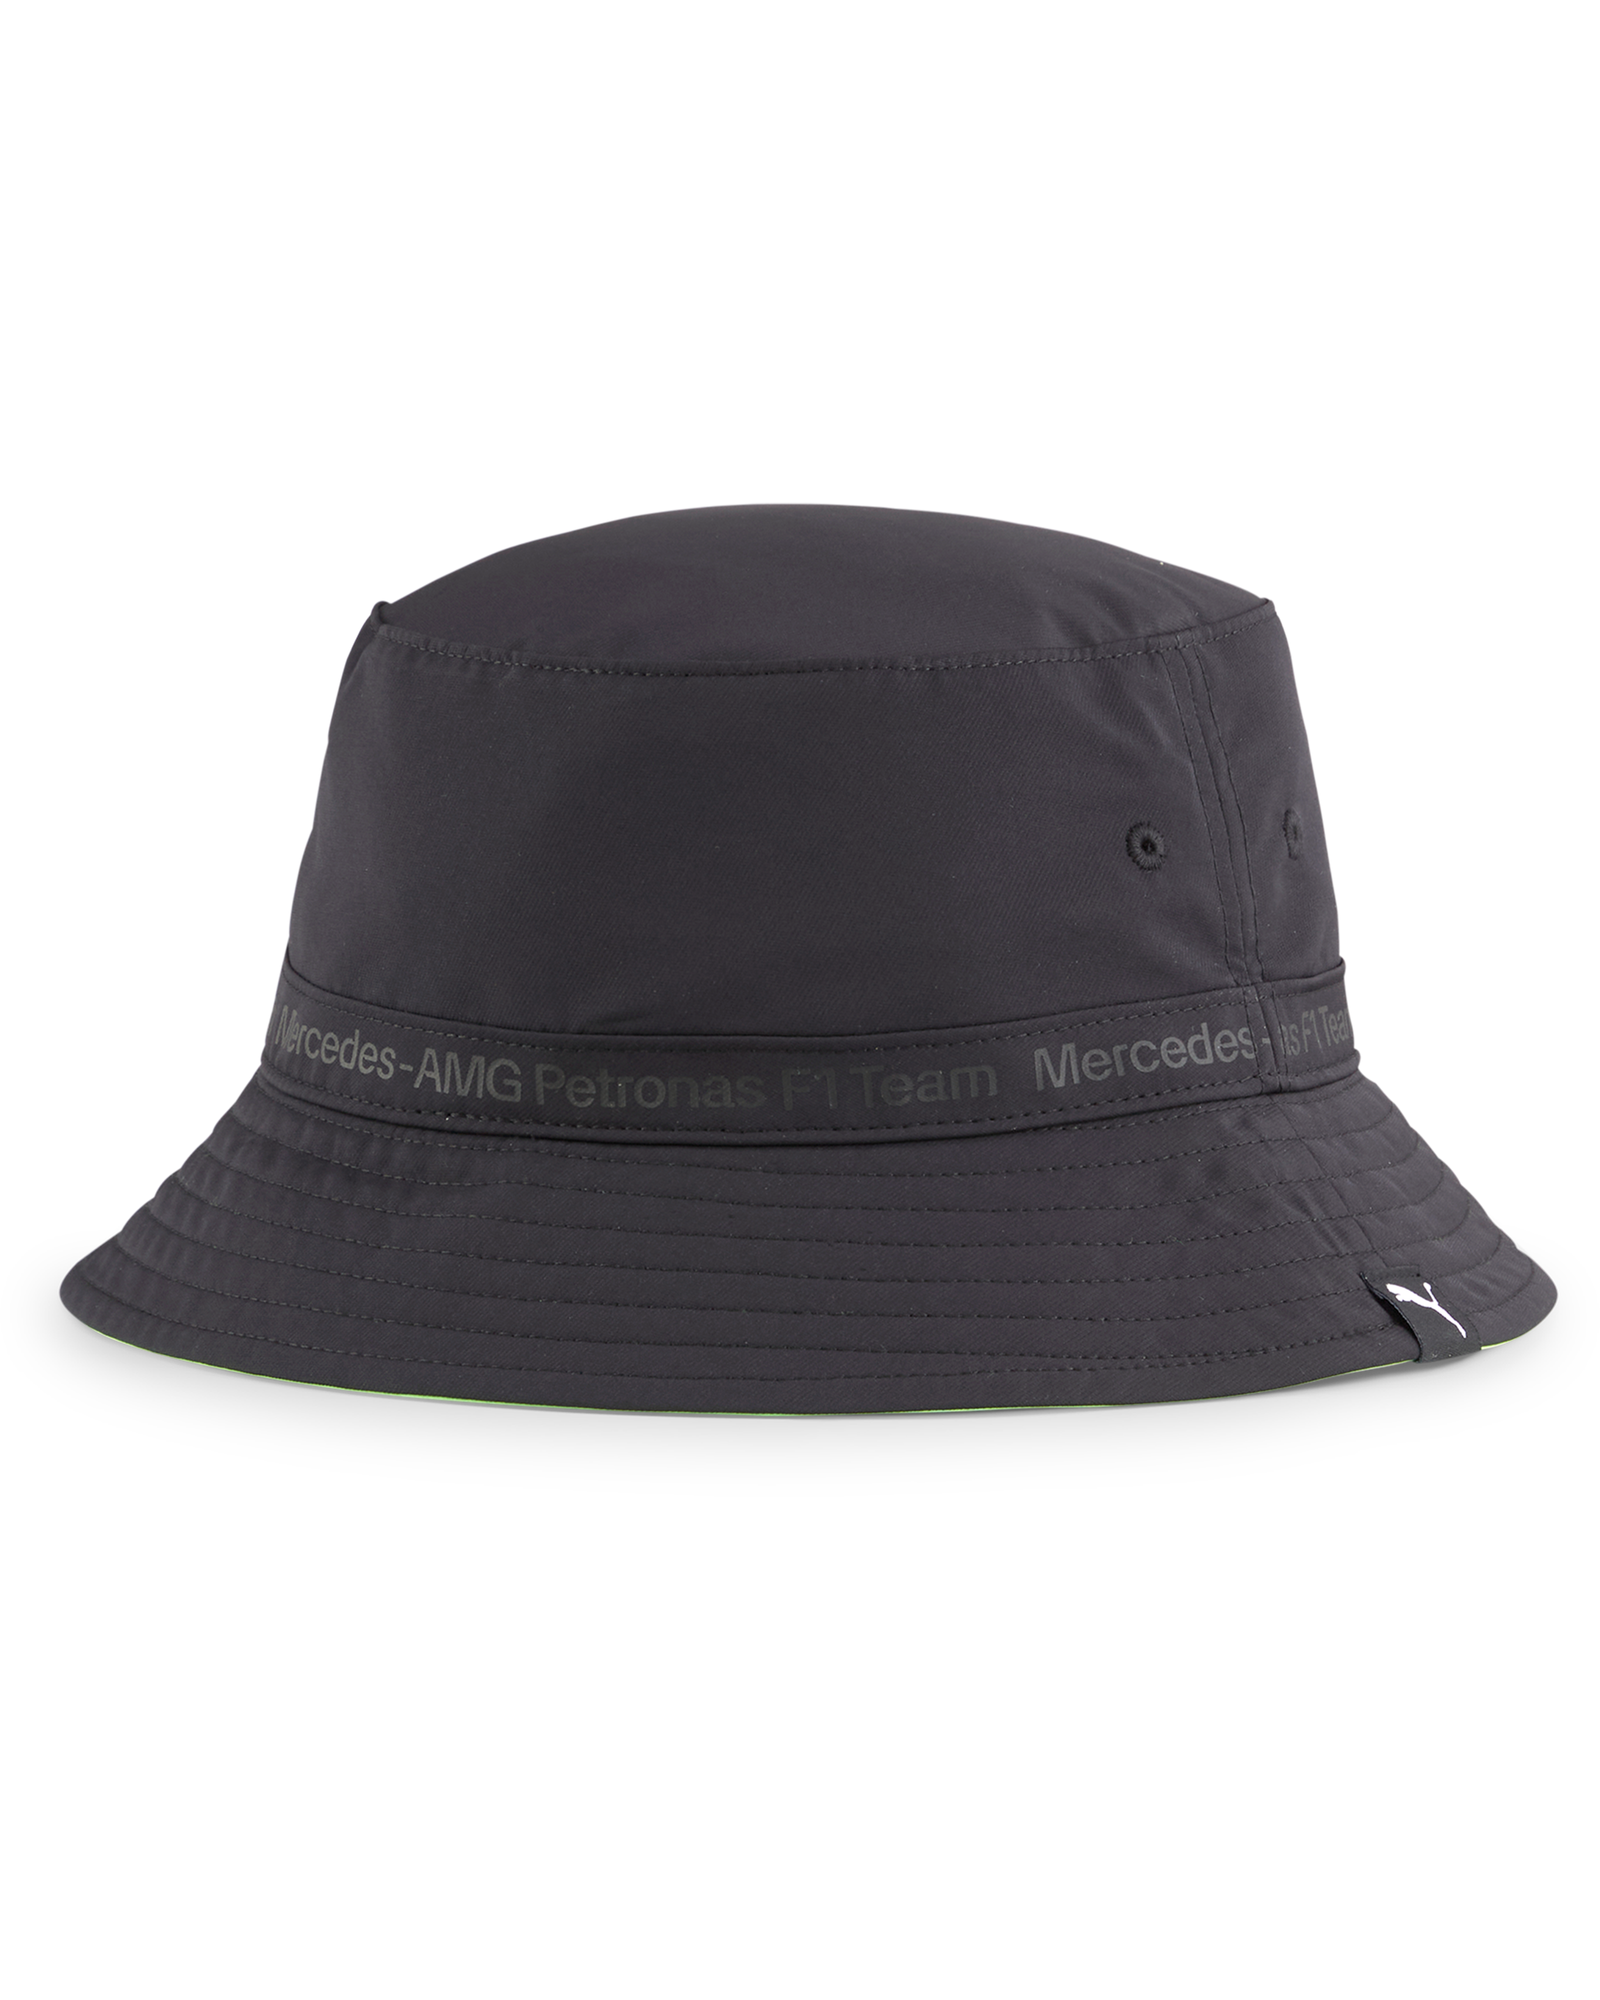 Puma Statement Bucket Hat Black